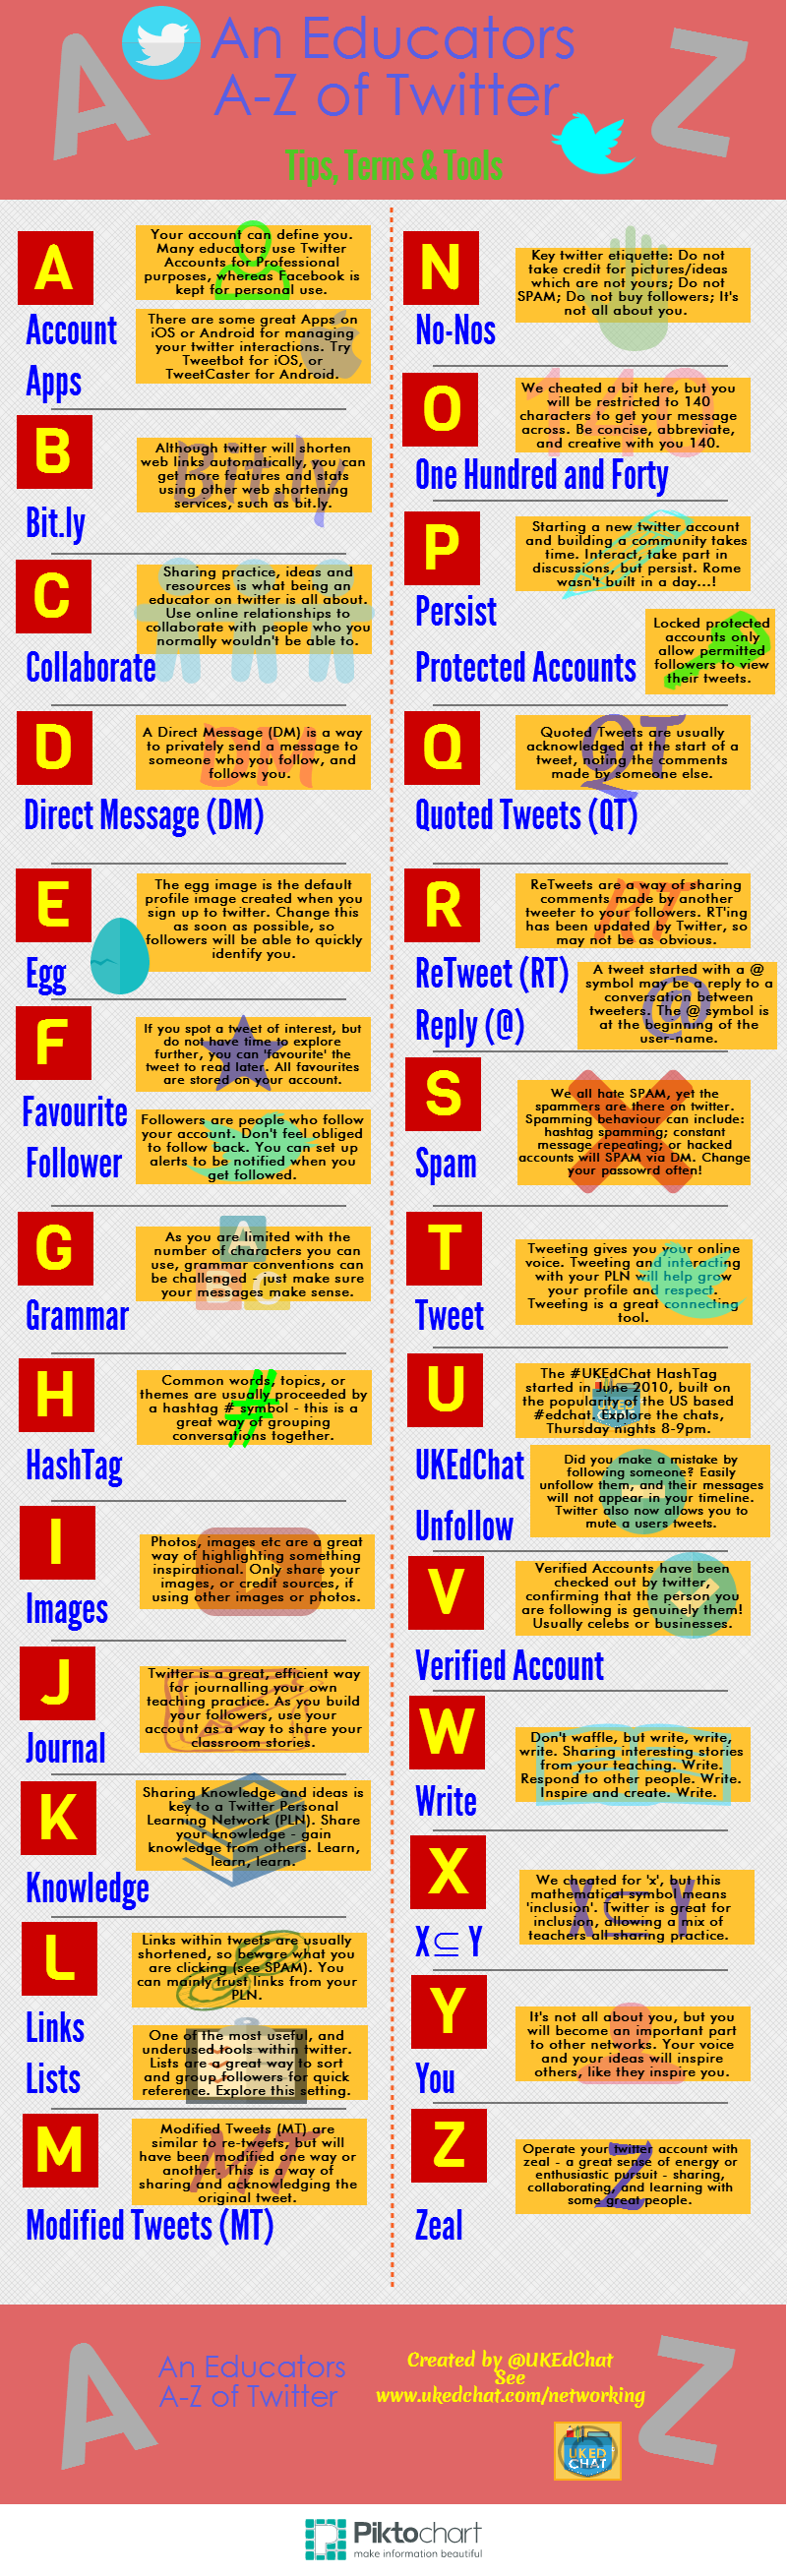 Twitter guide for teachers